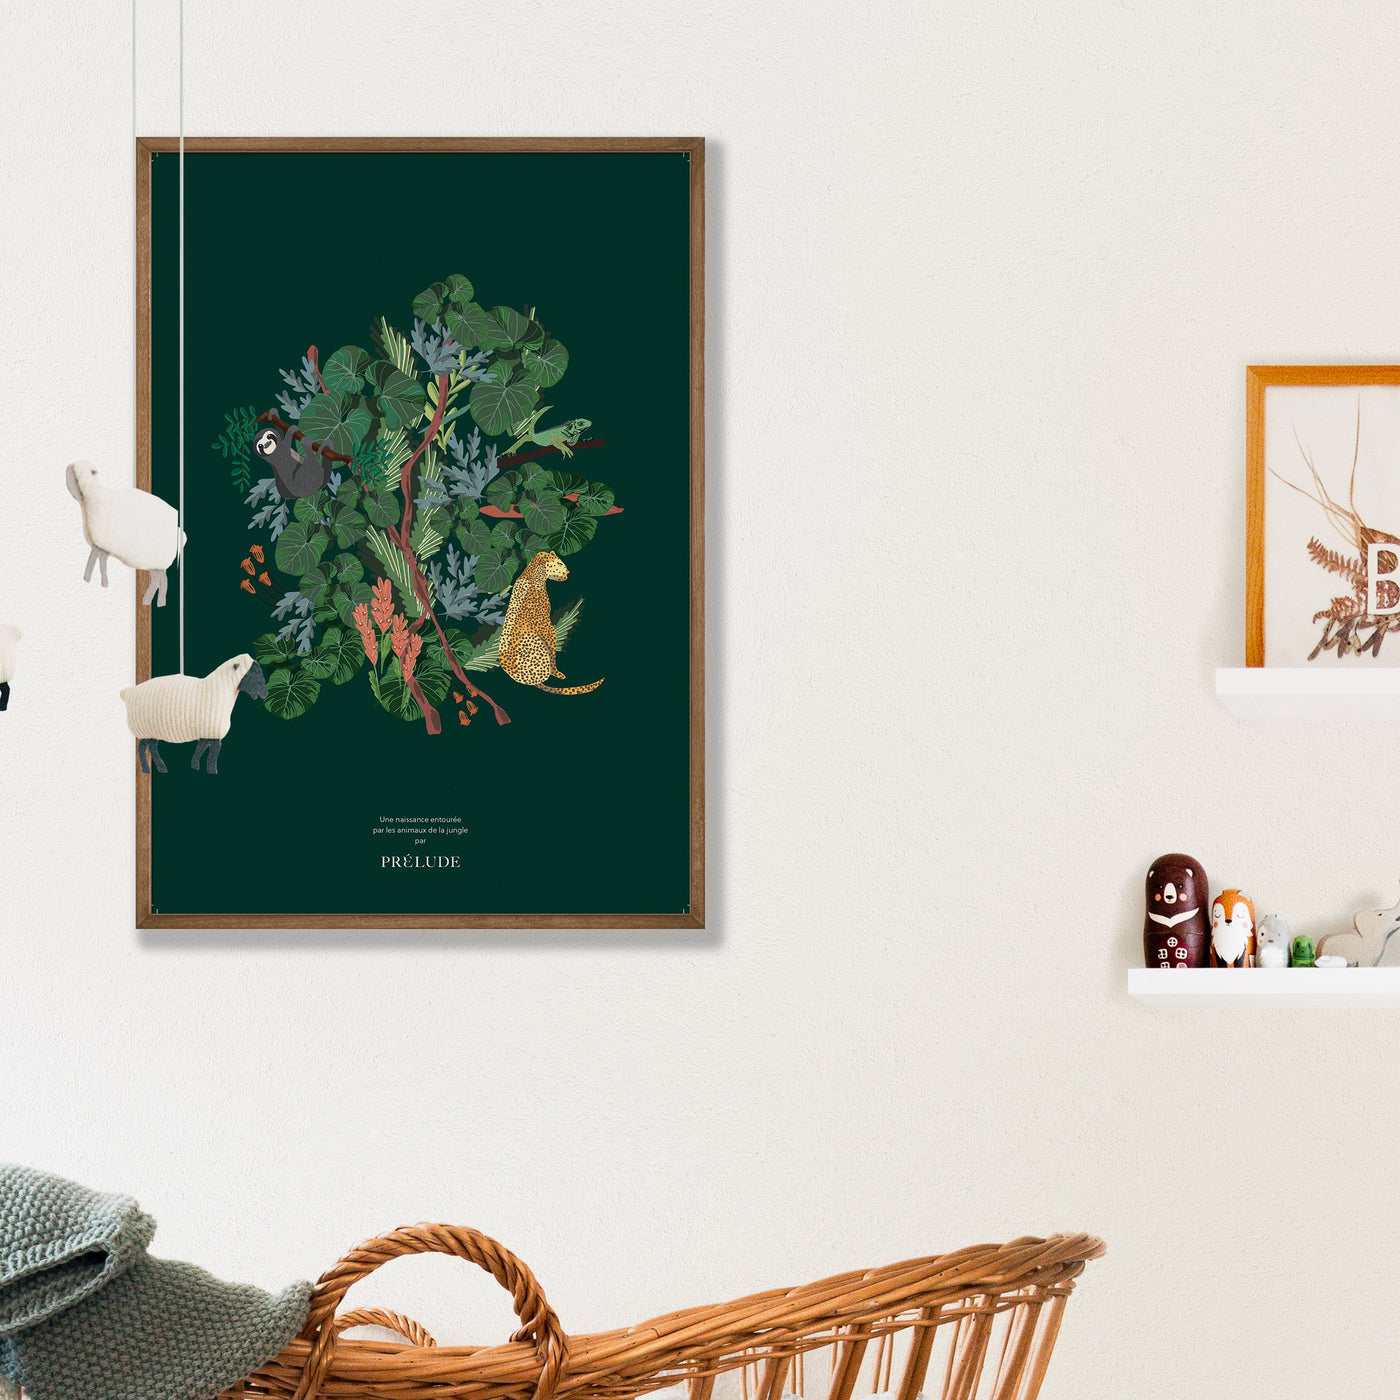 Affiche avec illustration jungle idéale pour un cadeau de naissance original ou en décoration de chambre bébé ou enfant. Existe en terracotta, vert et beige.